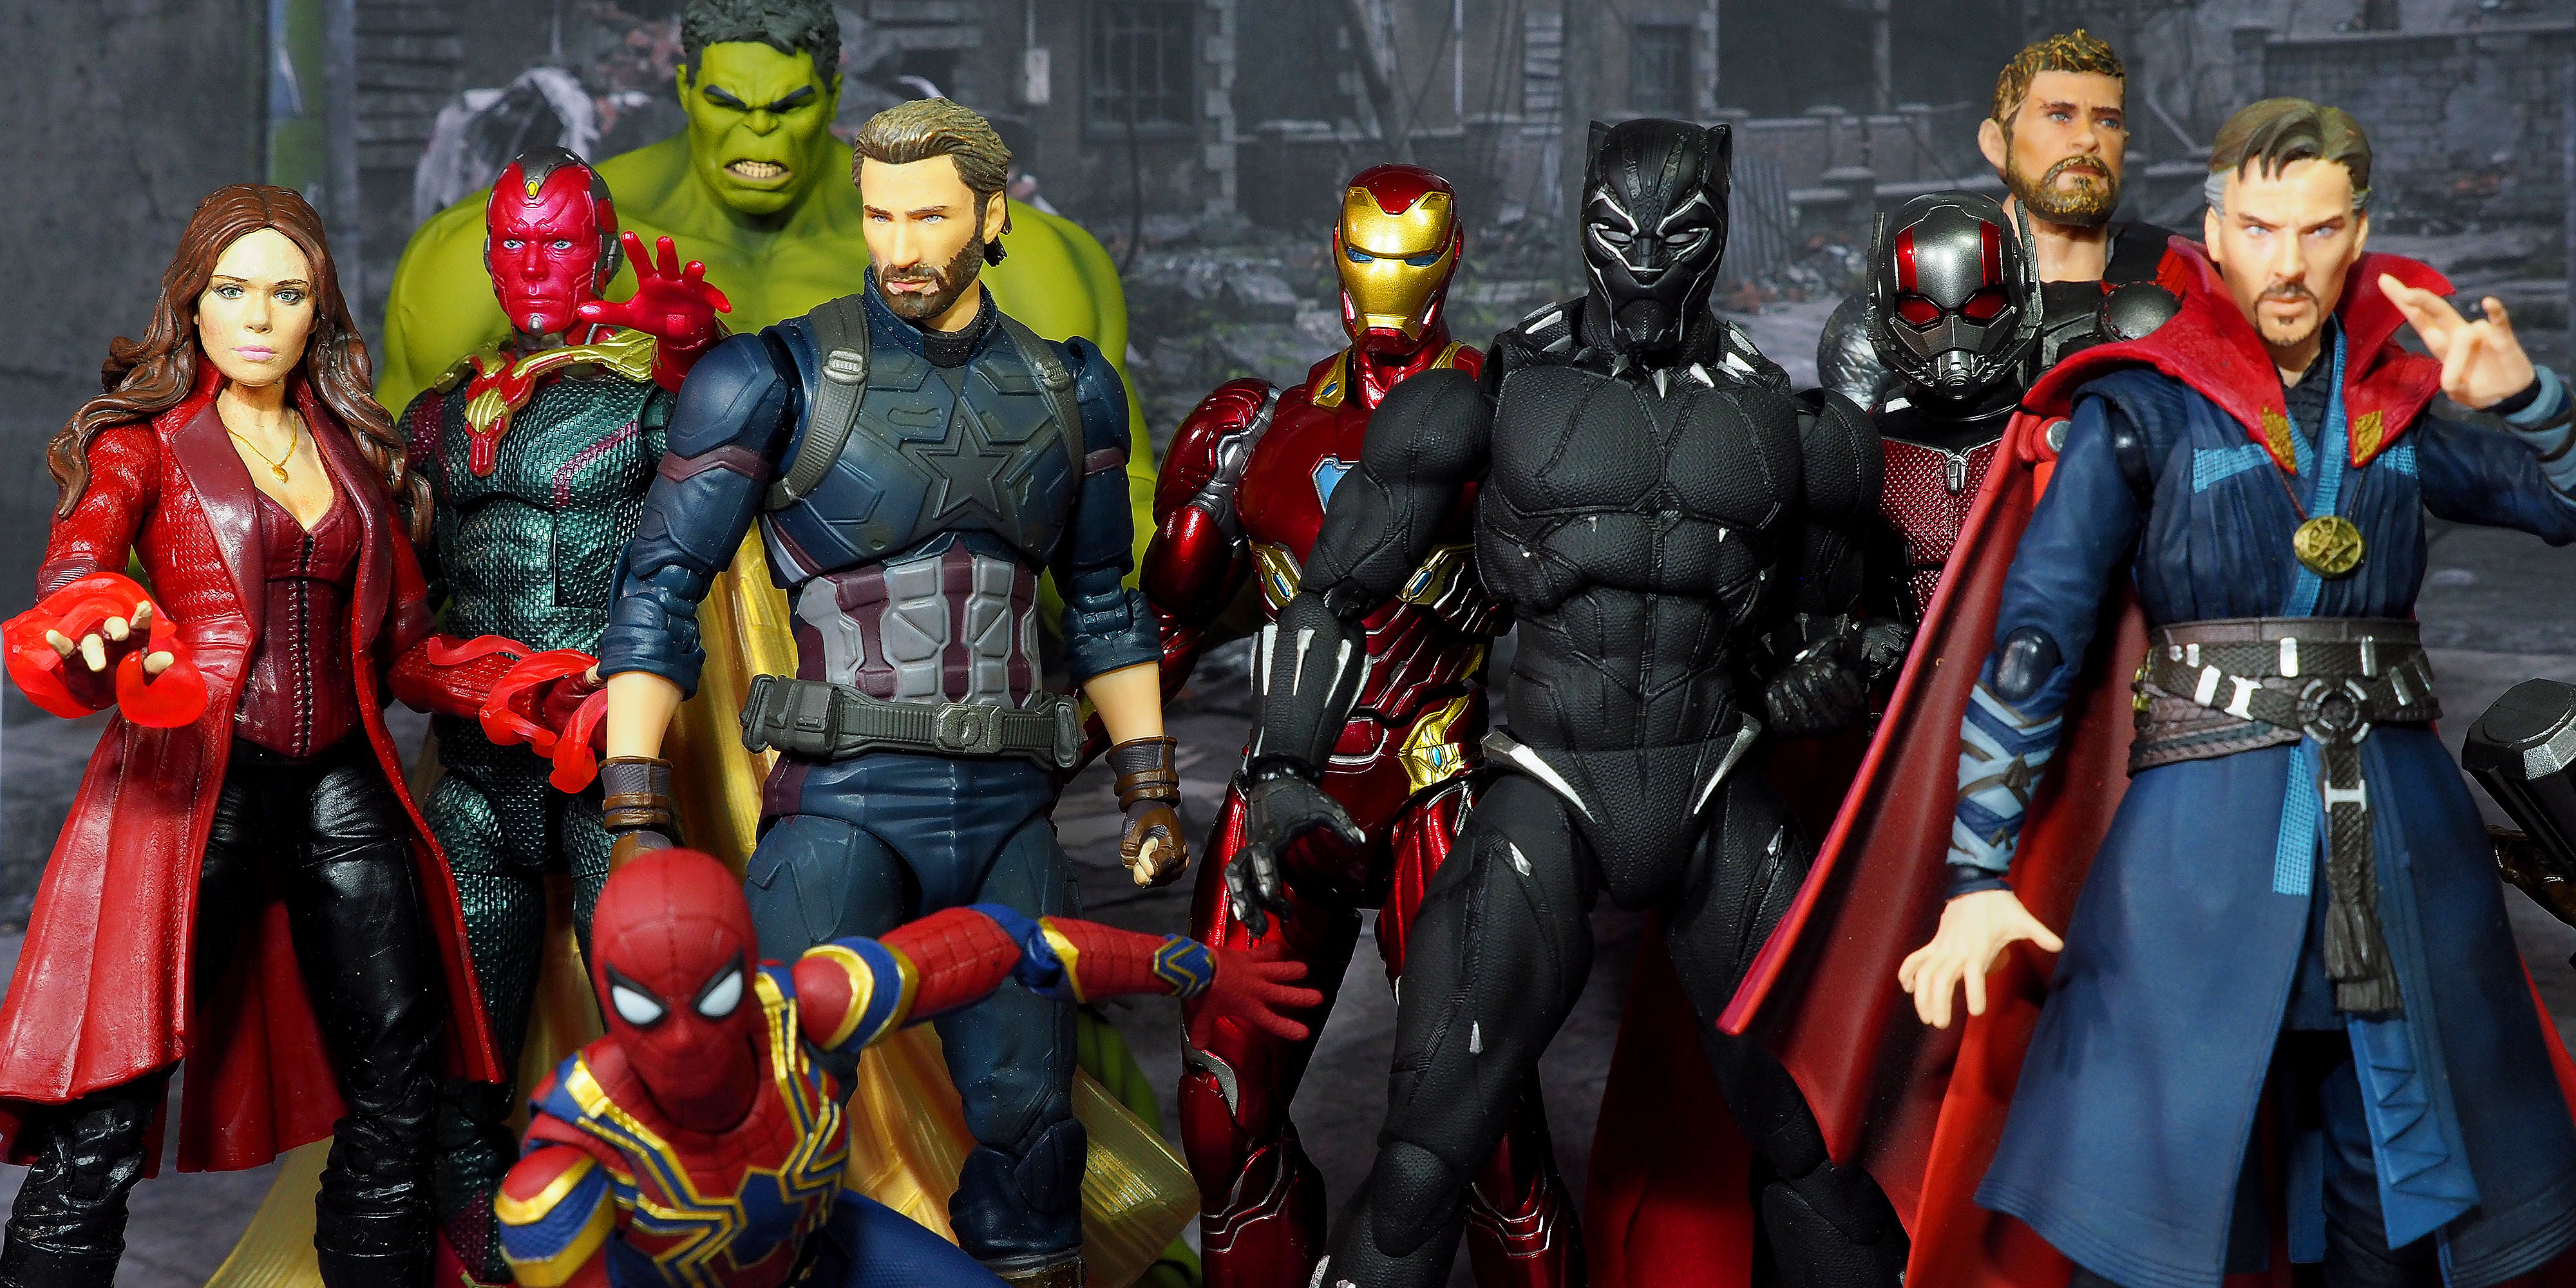 Marvel Superhero Figurines